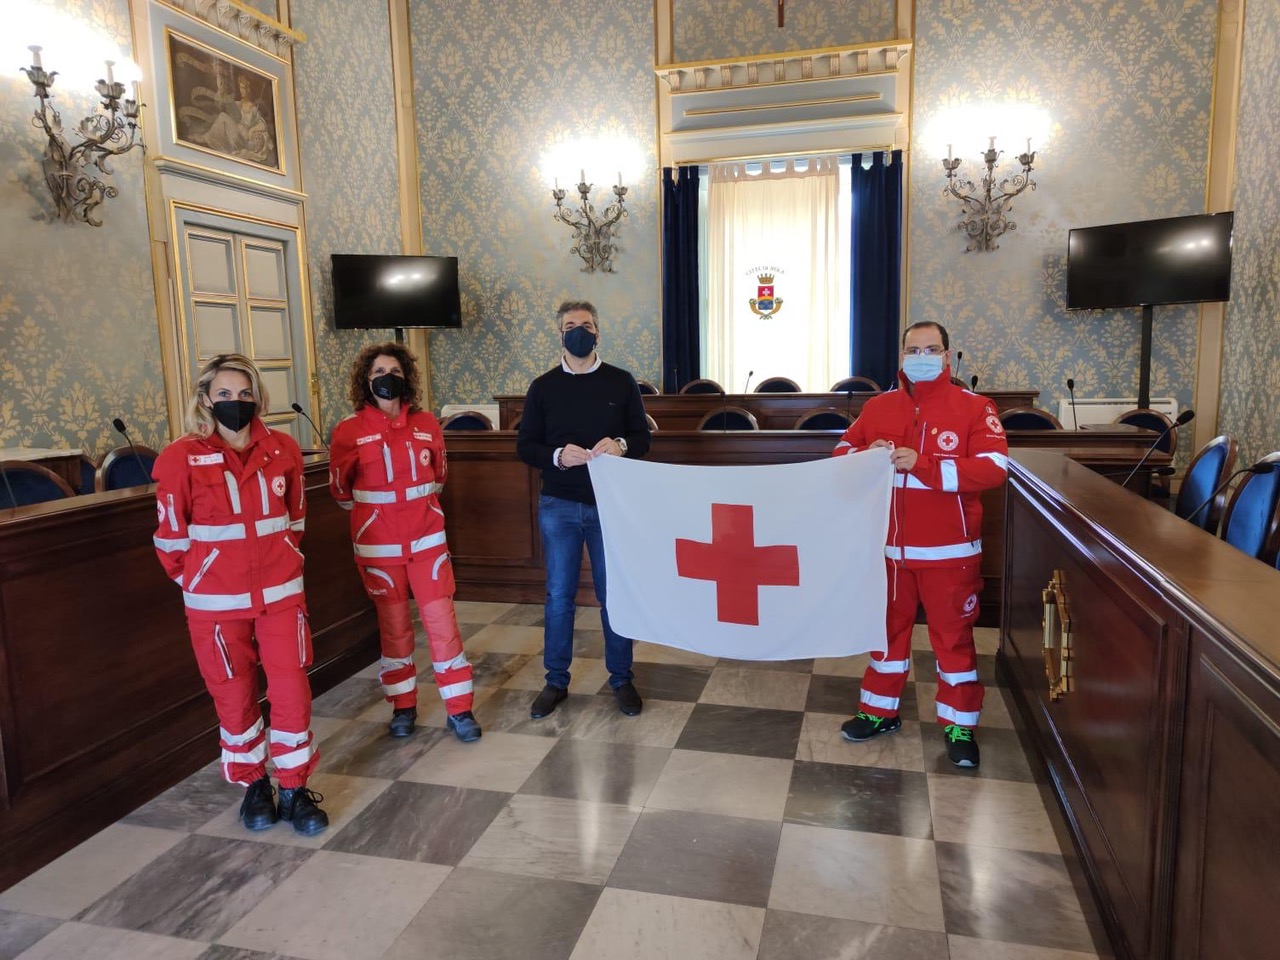 Settimana Mondiale della Croce Rossa: consegnata la bandiera Cri al sindaco di Avola